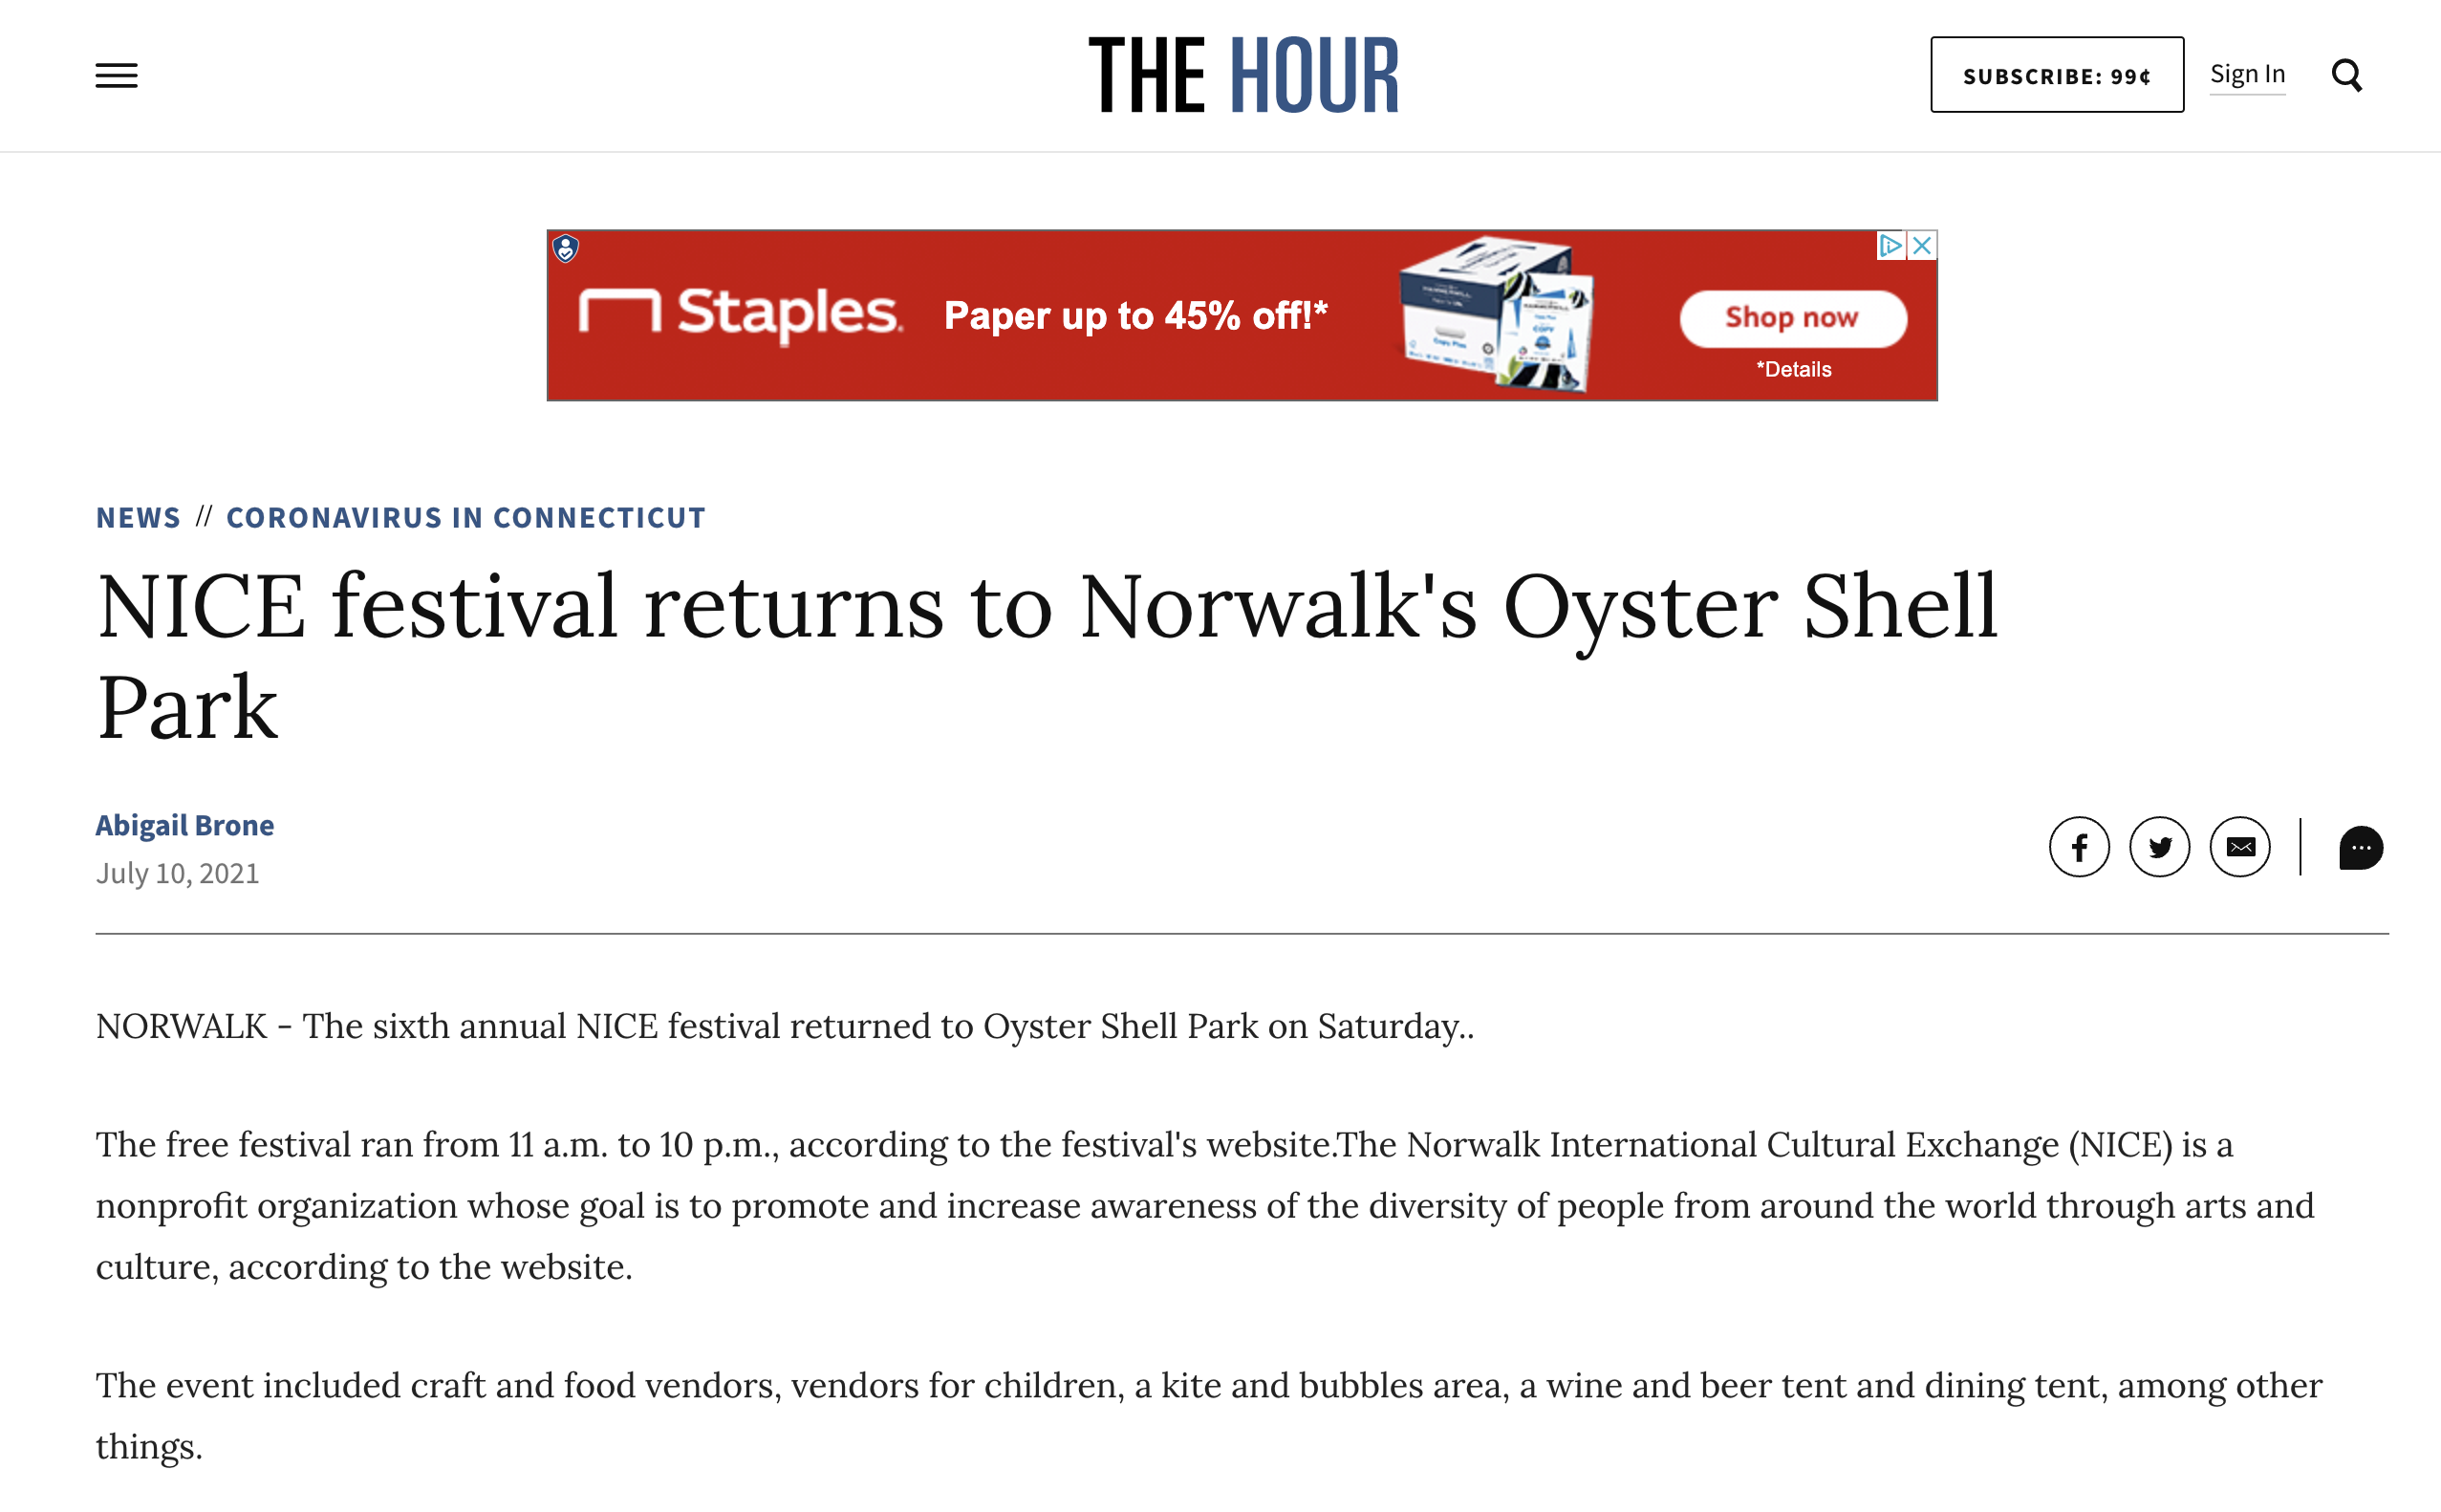 NICE festival returns to Norwalk's Oyster Shell Park